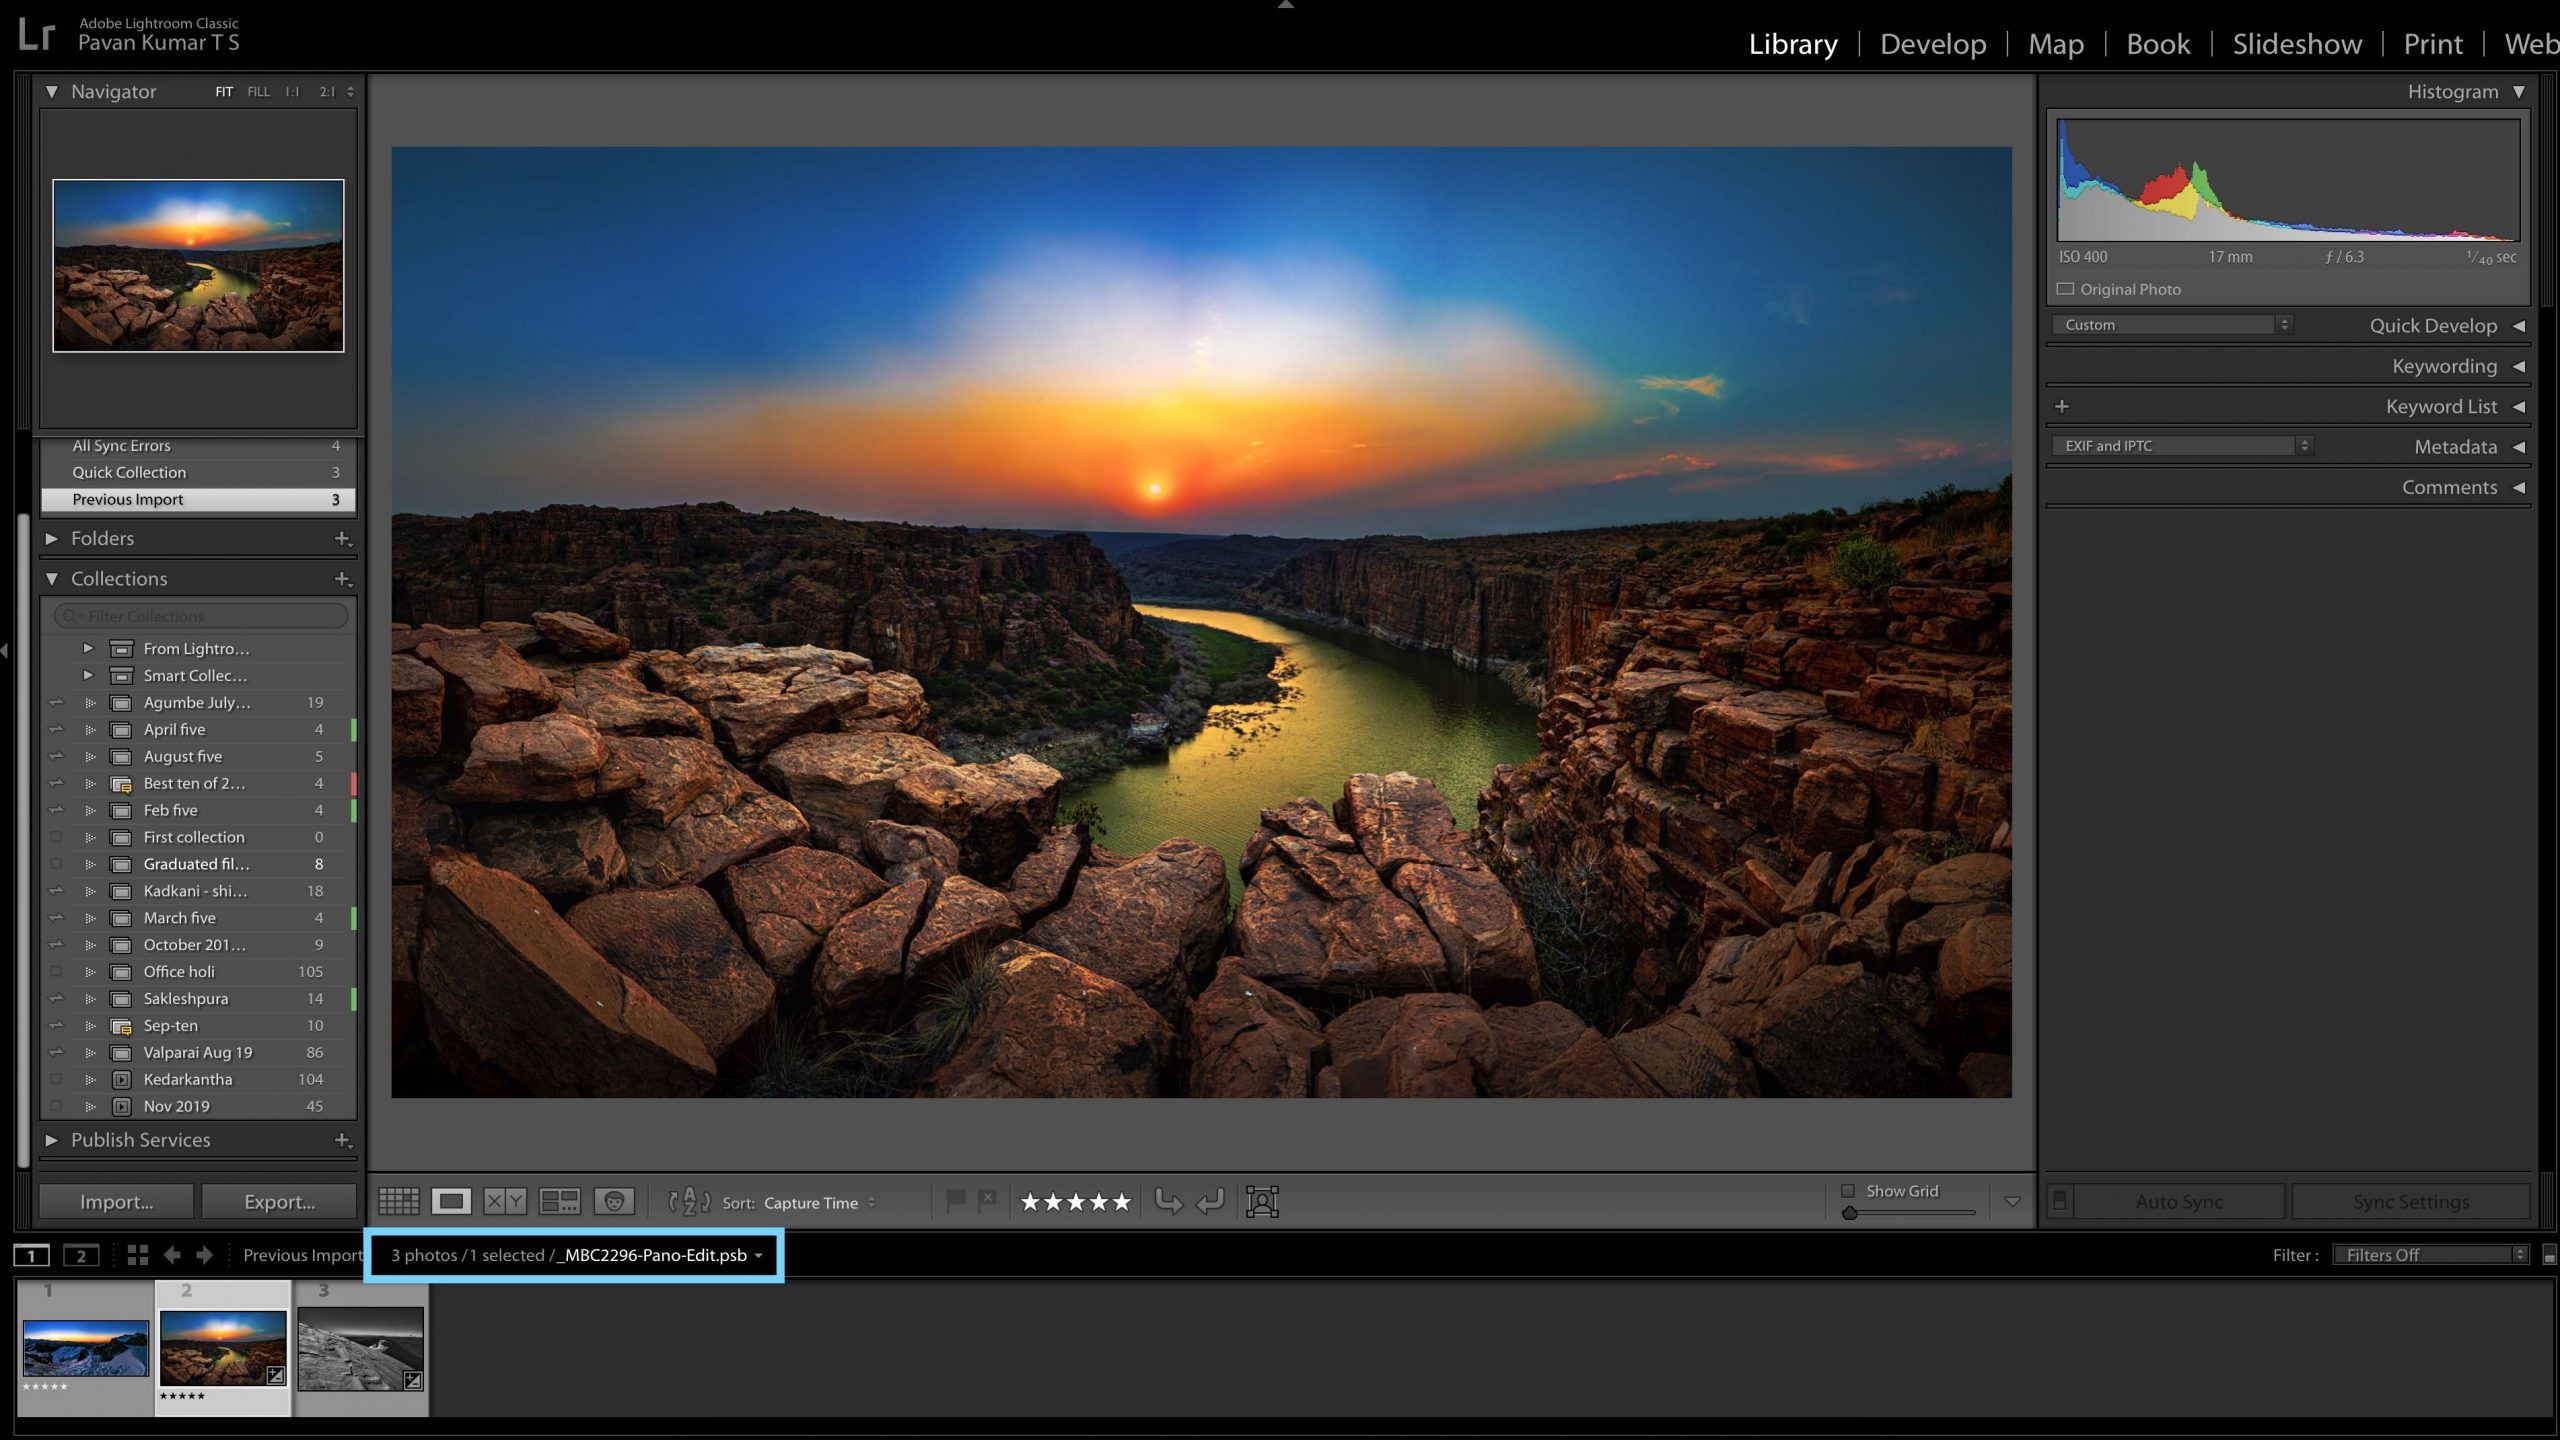 Adobe tar med nya funktioner till Lightroom som Split View på iPad och nya exportalternativ 2